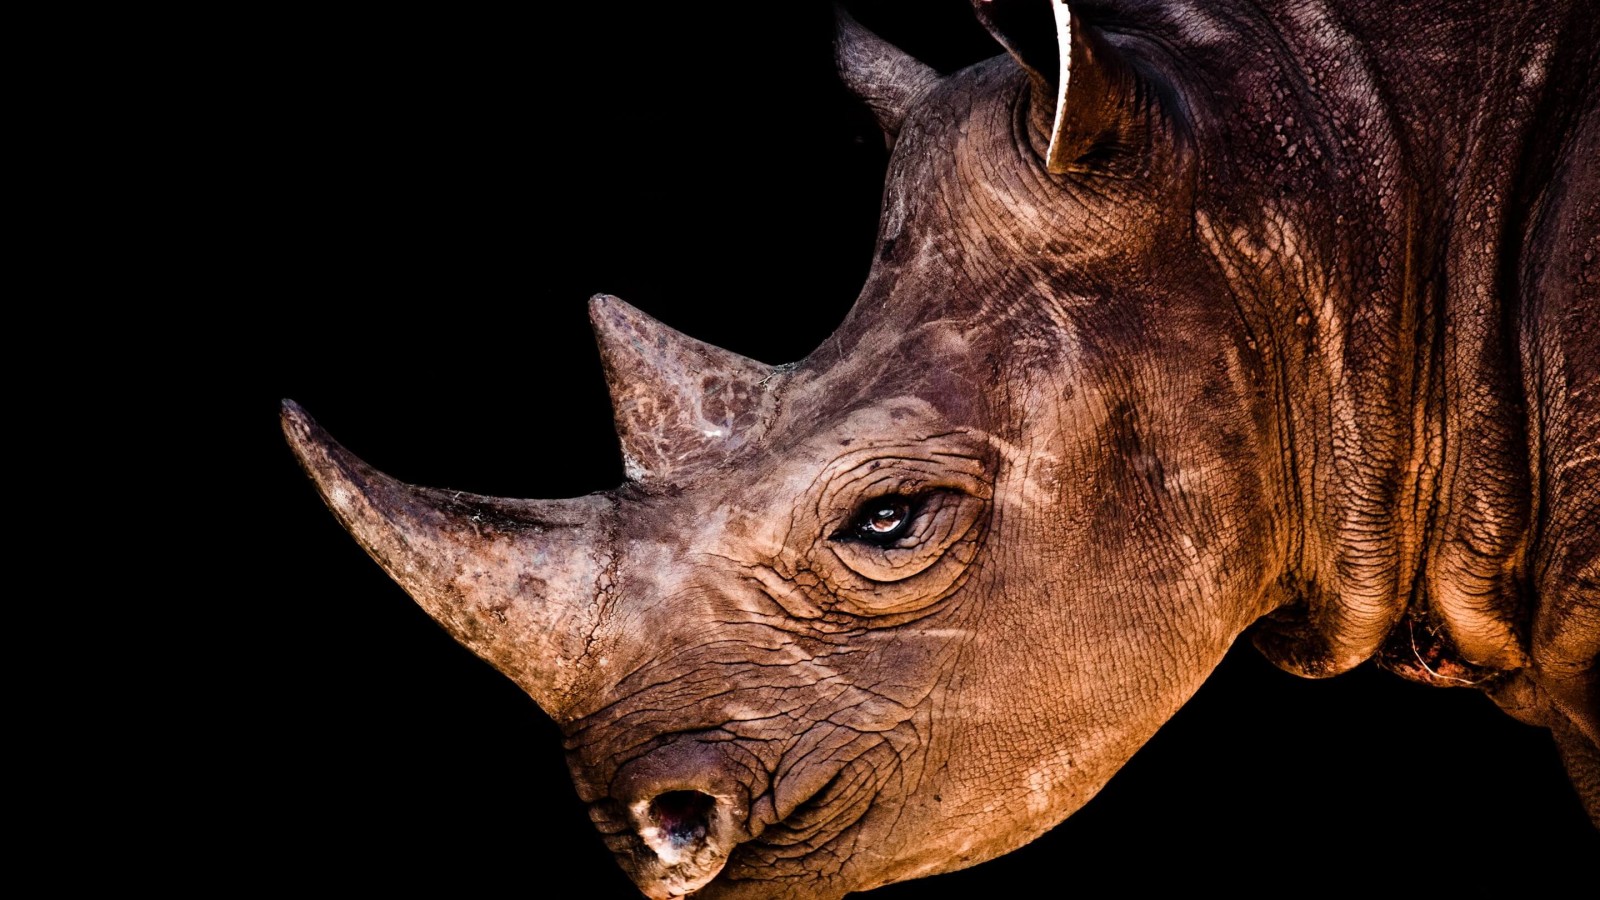 Rhinoceros Portrait Wallpaper for Desktop 1600x900